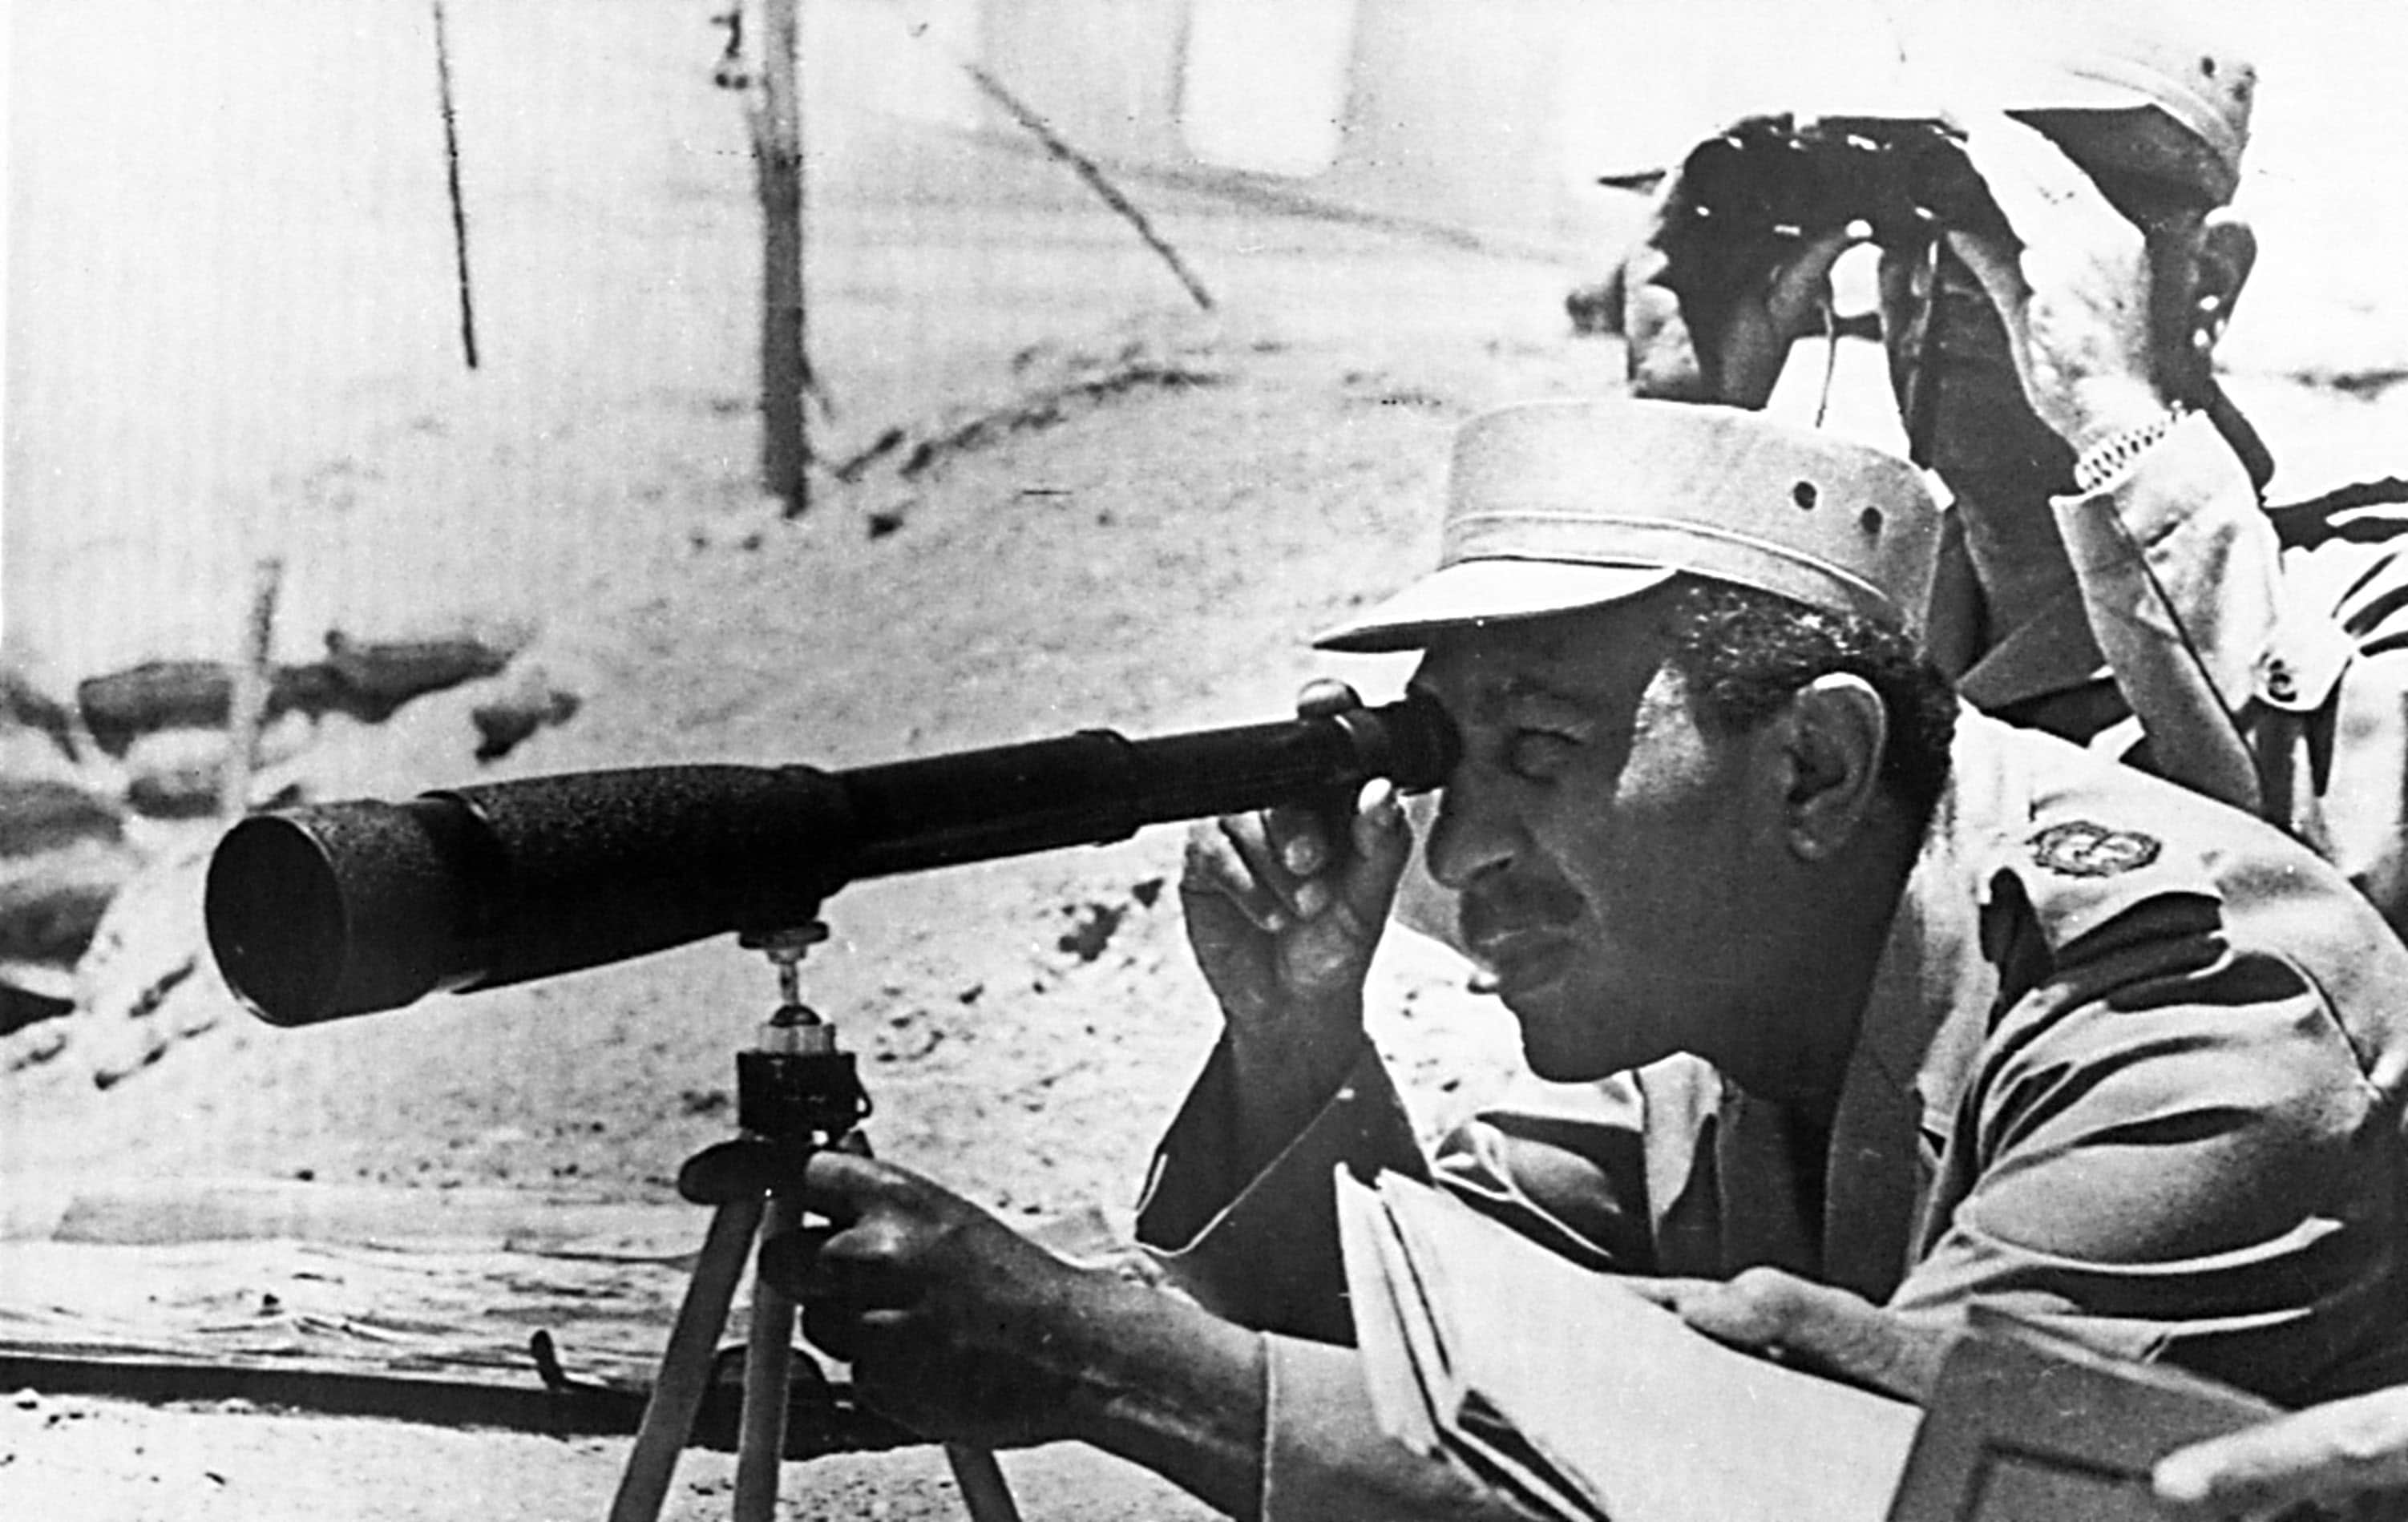 נשיא מצרים אנואר סאדאת בביקור בקו החזית בסיני לפני המלחמה, 4 ביוני 1973 (צילום: AP Photo)